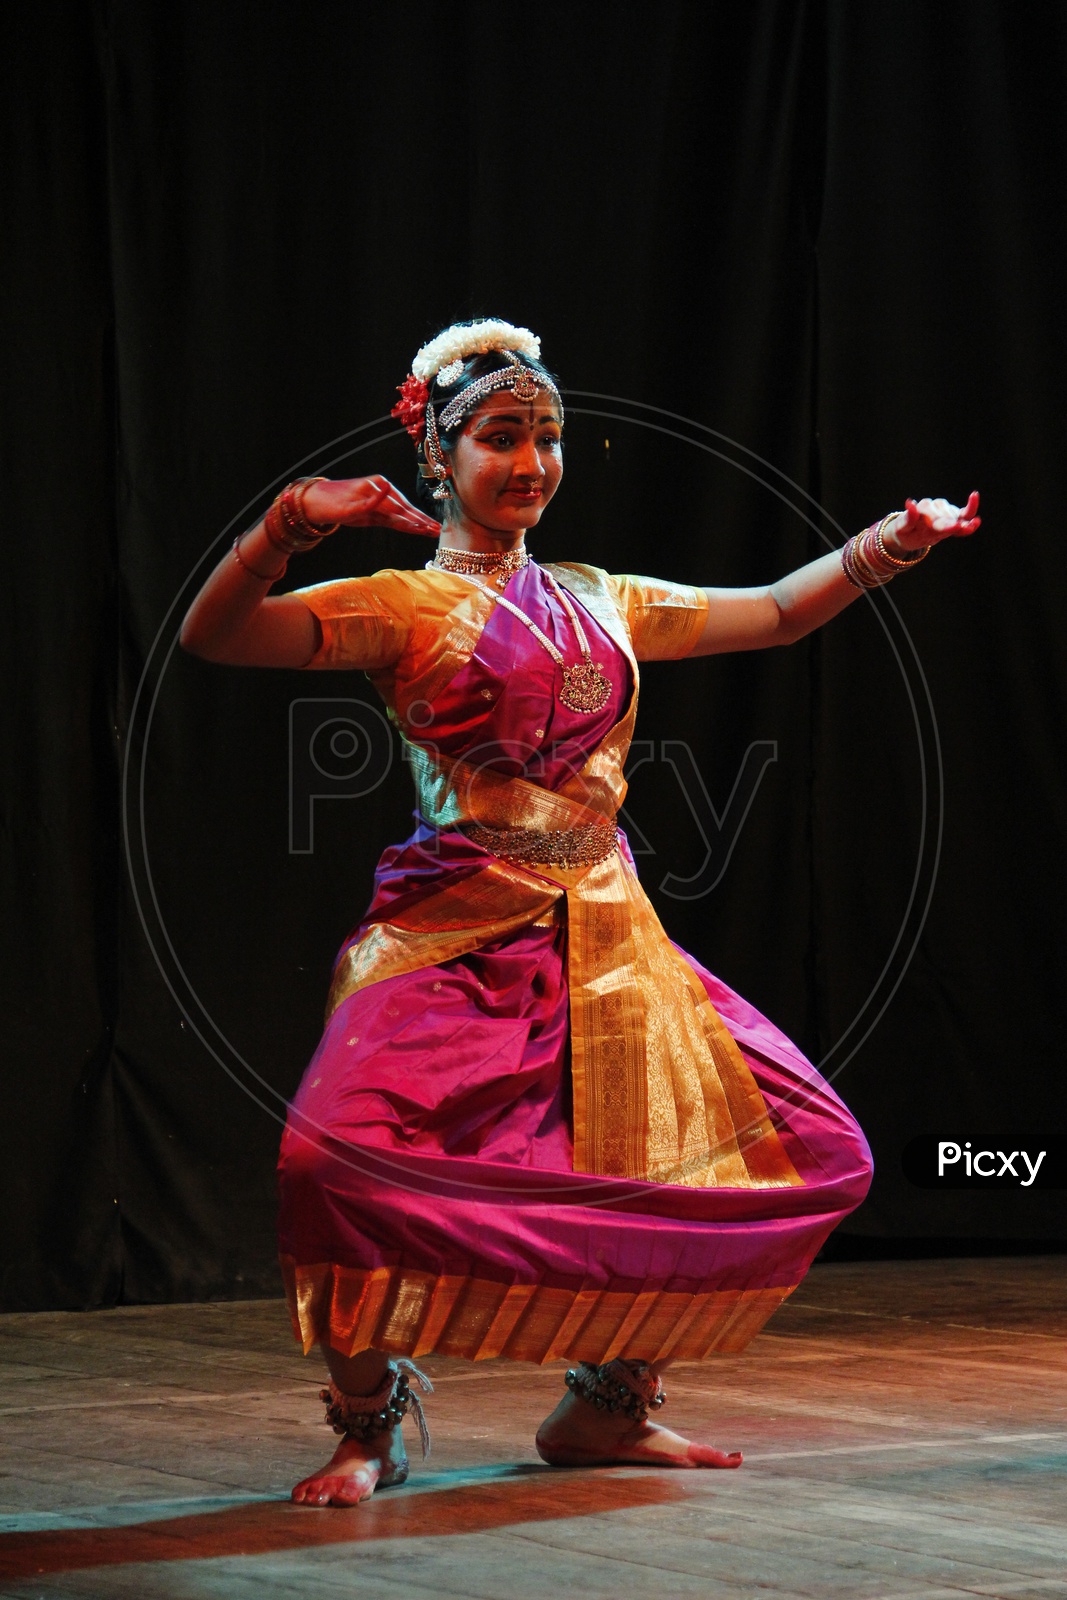 Pin by Shruti yatri on Indian doors | Bharatanatyam poses, Dancing poses,  Indian classical dance